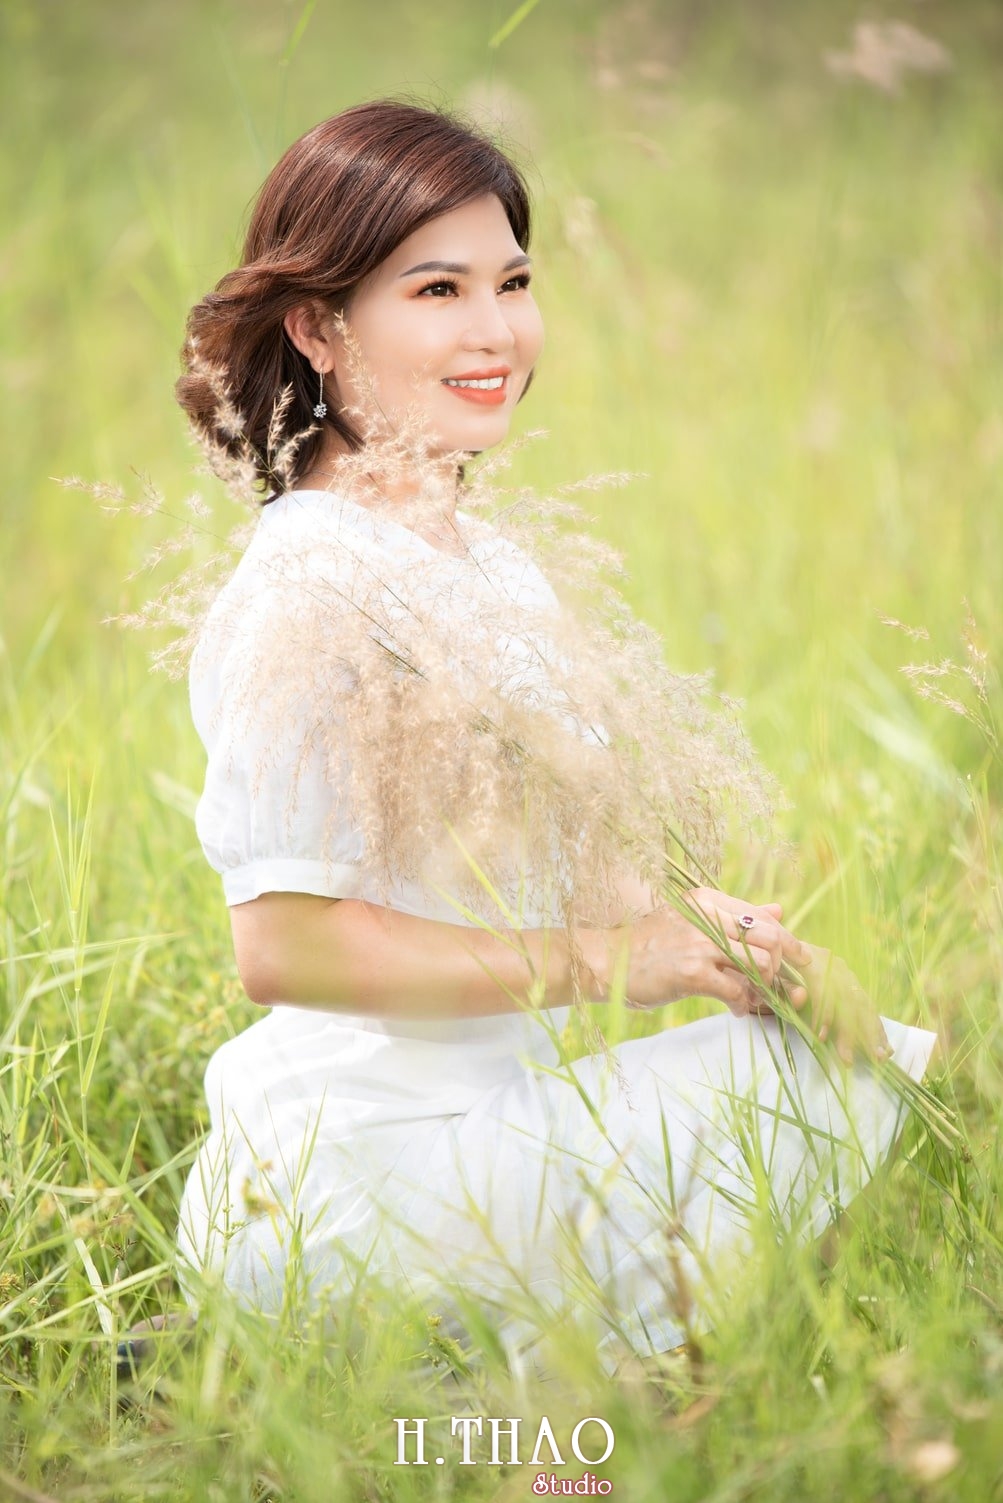 Canh Dong Co Lau 3 - Chụp ảnh với cánh đồng cỏ lau quận 9 tuyệt đẹp - HThao Studio